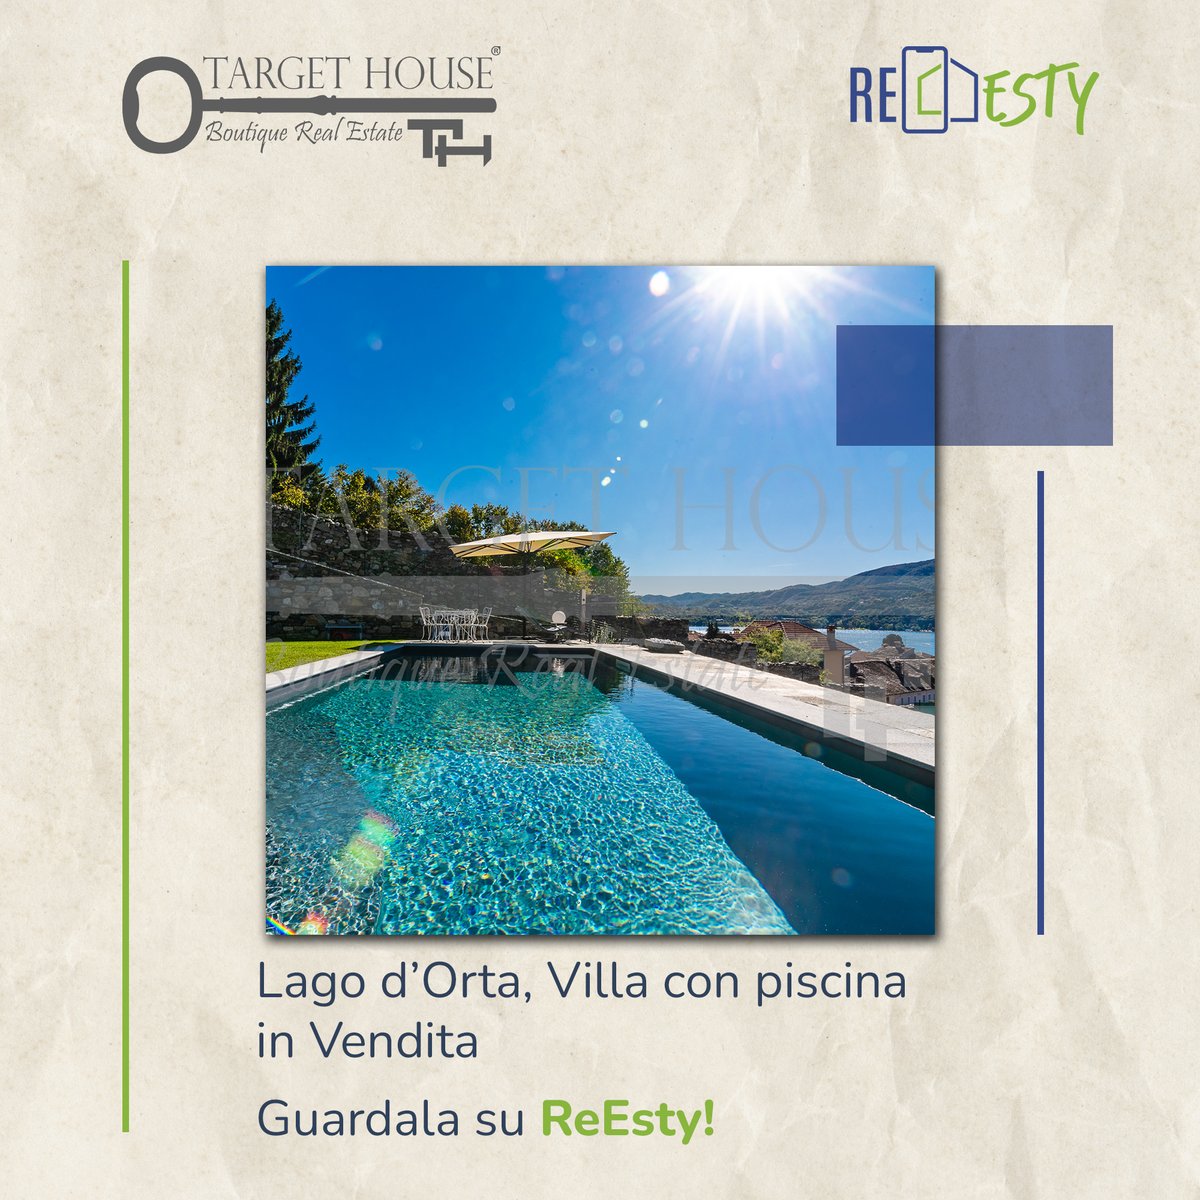 Una meravigliosa #villa con #piscina in #vendita sul #LagodOrta: guardala su #ReEsty!
bit.ly/3kPIRfm